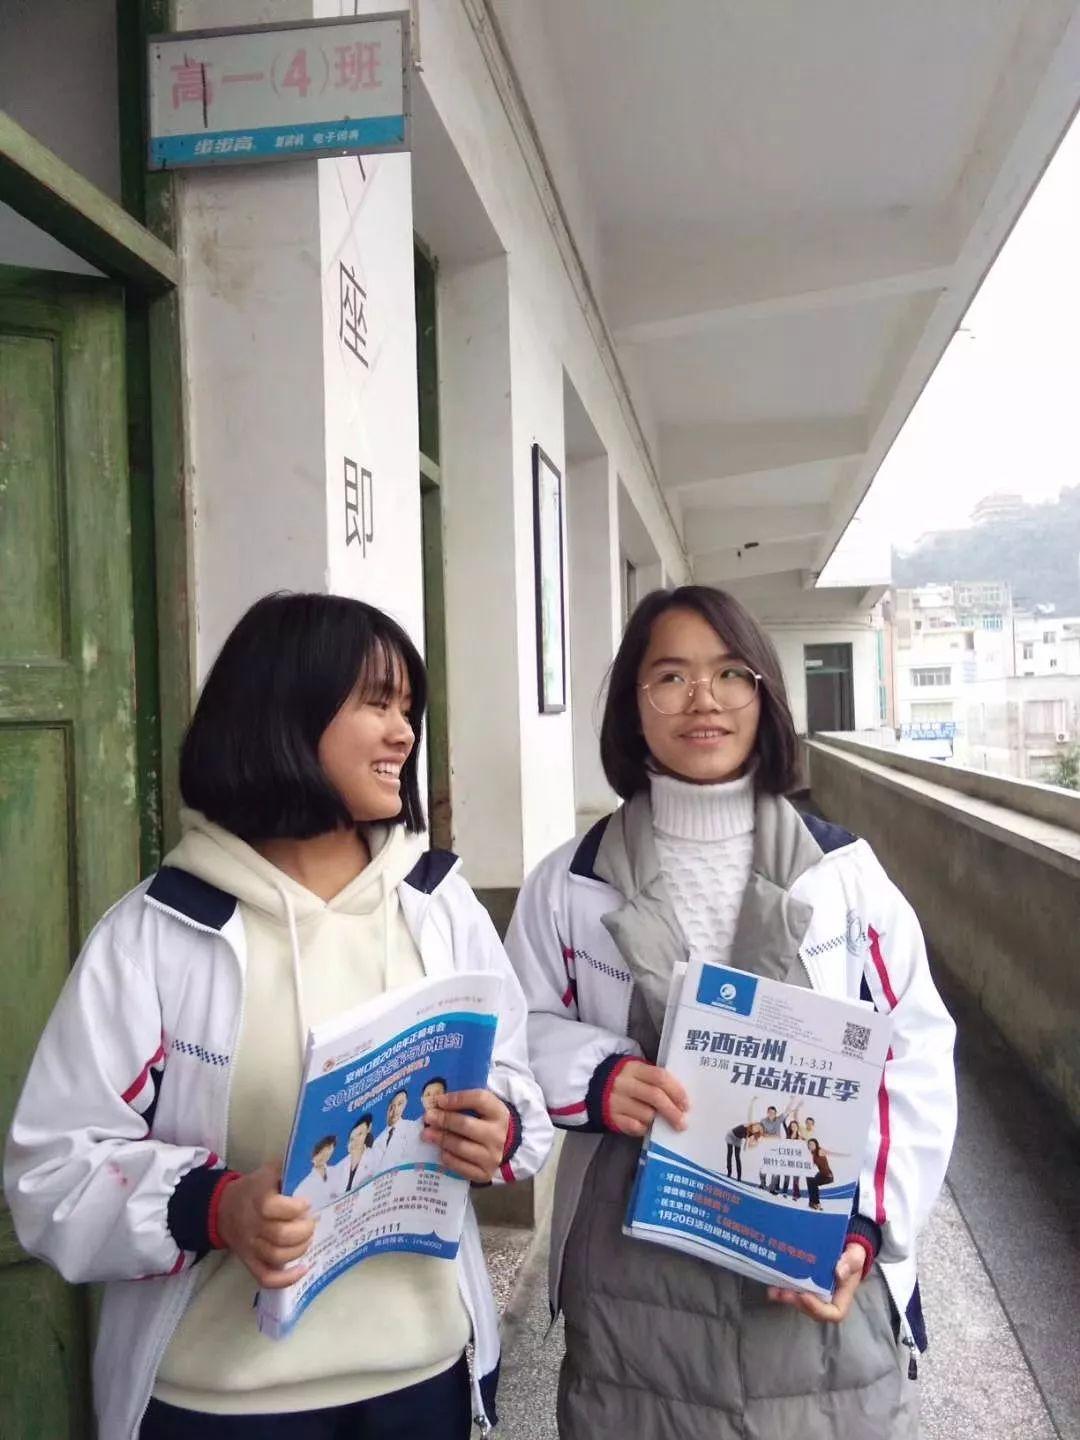 在天气相对恶劣的寒冬,兴义市各中小学学生的身心健康备受关注